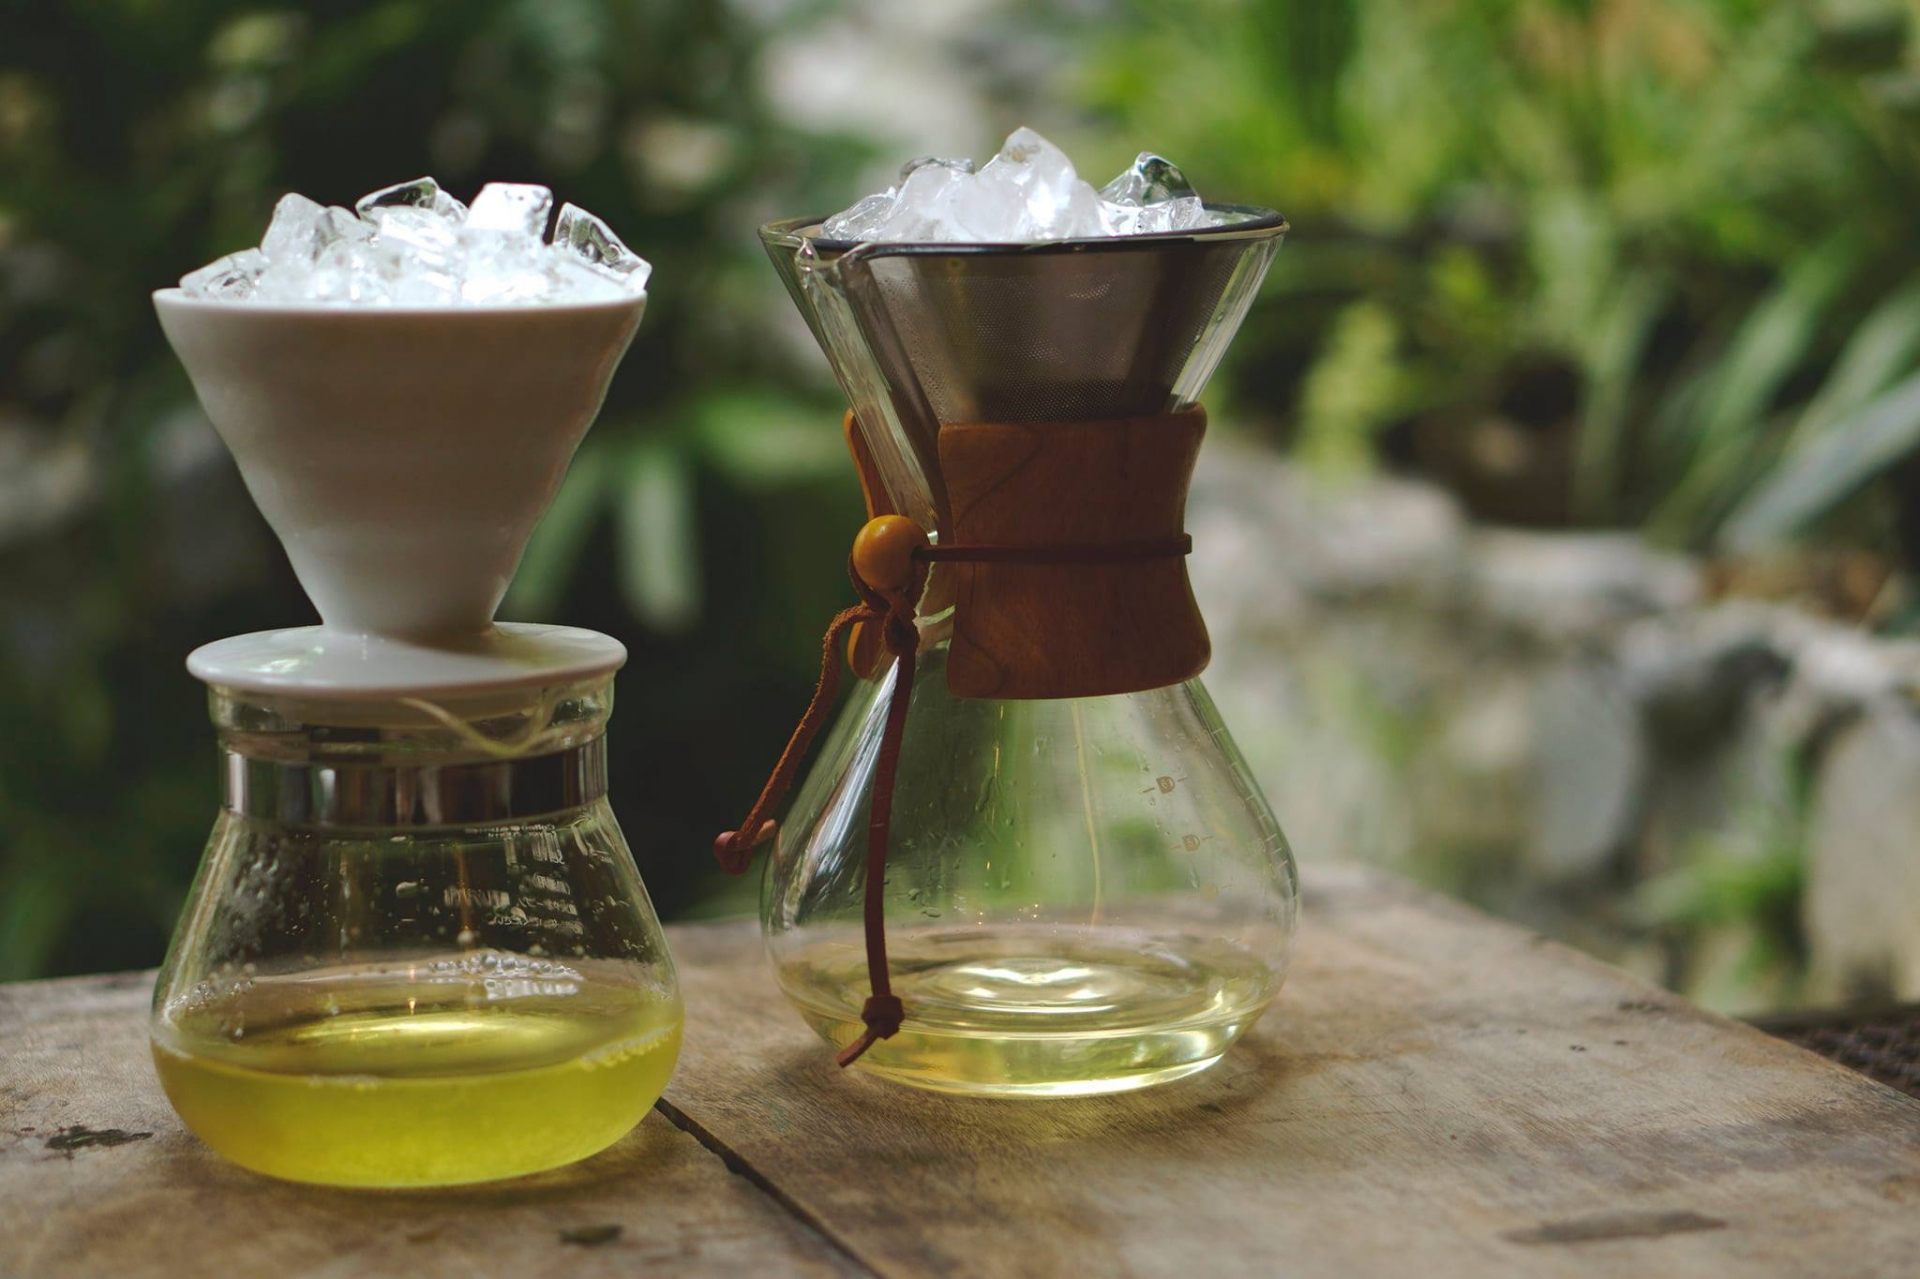 Cách làm trà ủ lạnh - trà coldbrew cực đơn giản mà ngon ngay tại nhà - Ảnh 9